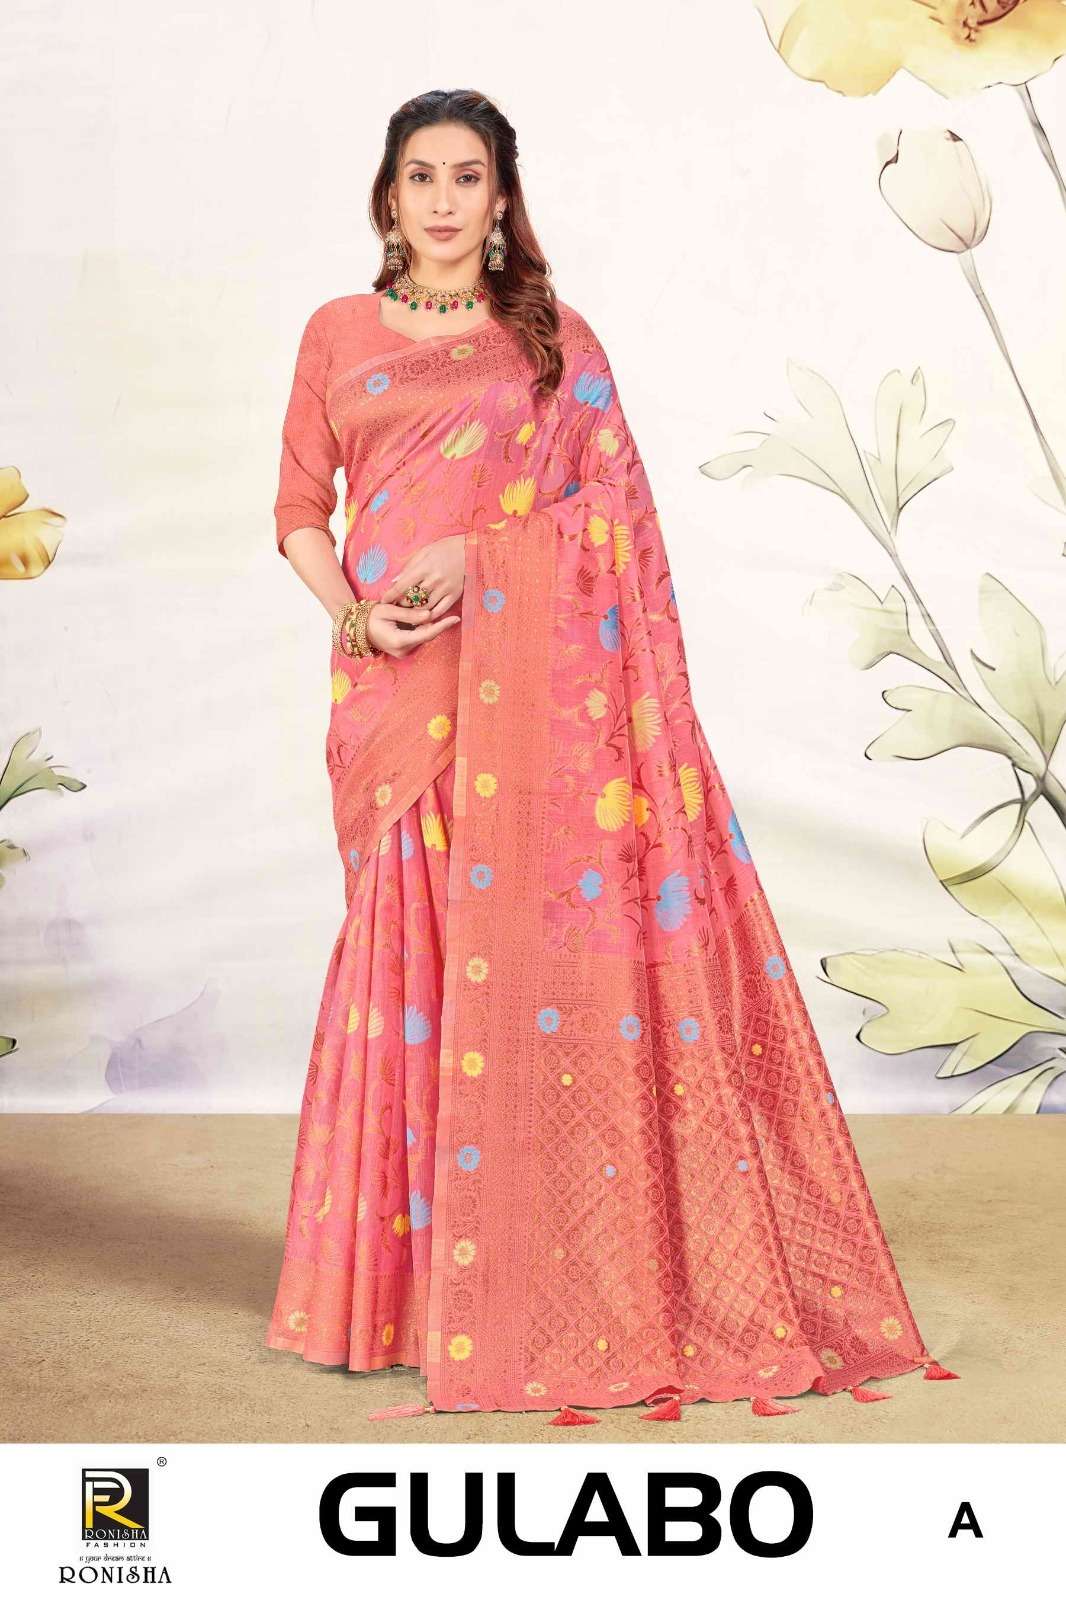 Ronisha Gulabo Banarasi Silk Saree Wholesale catalog